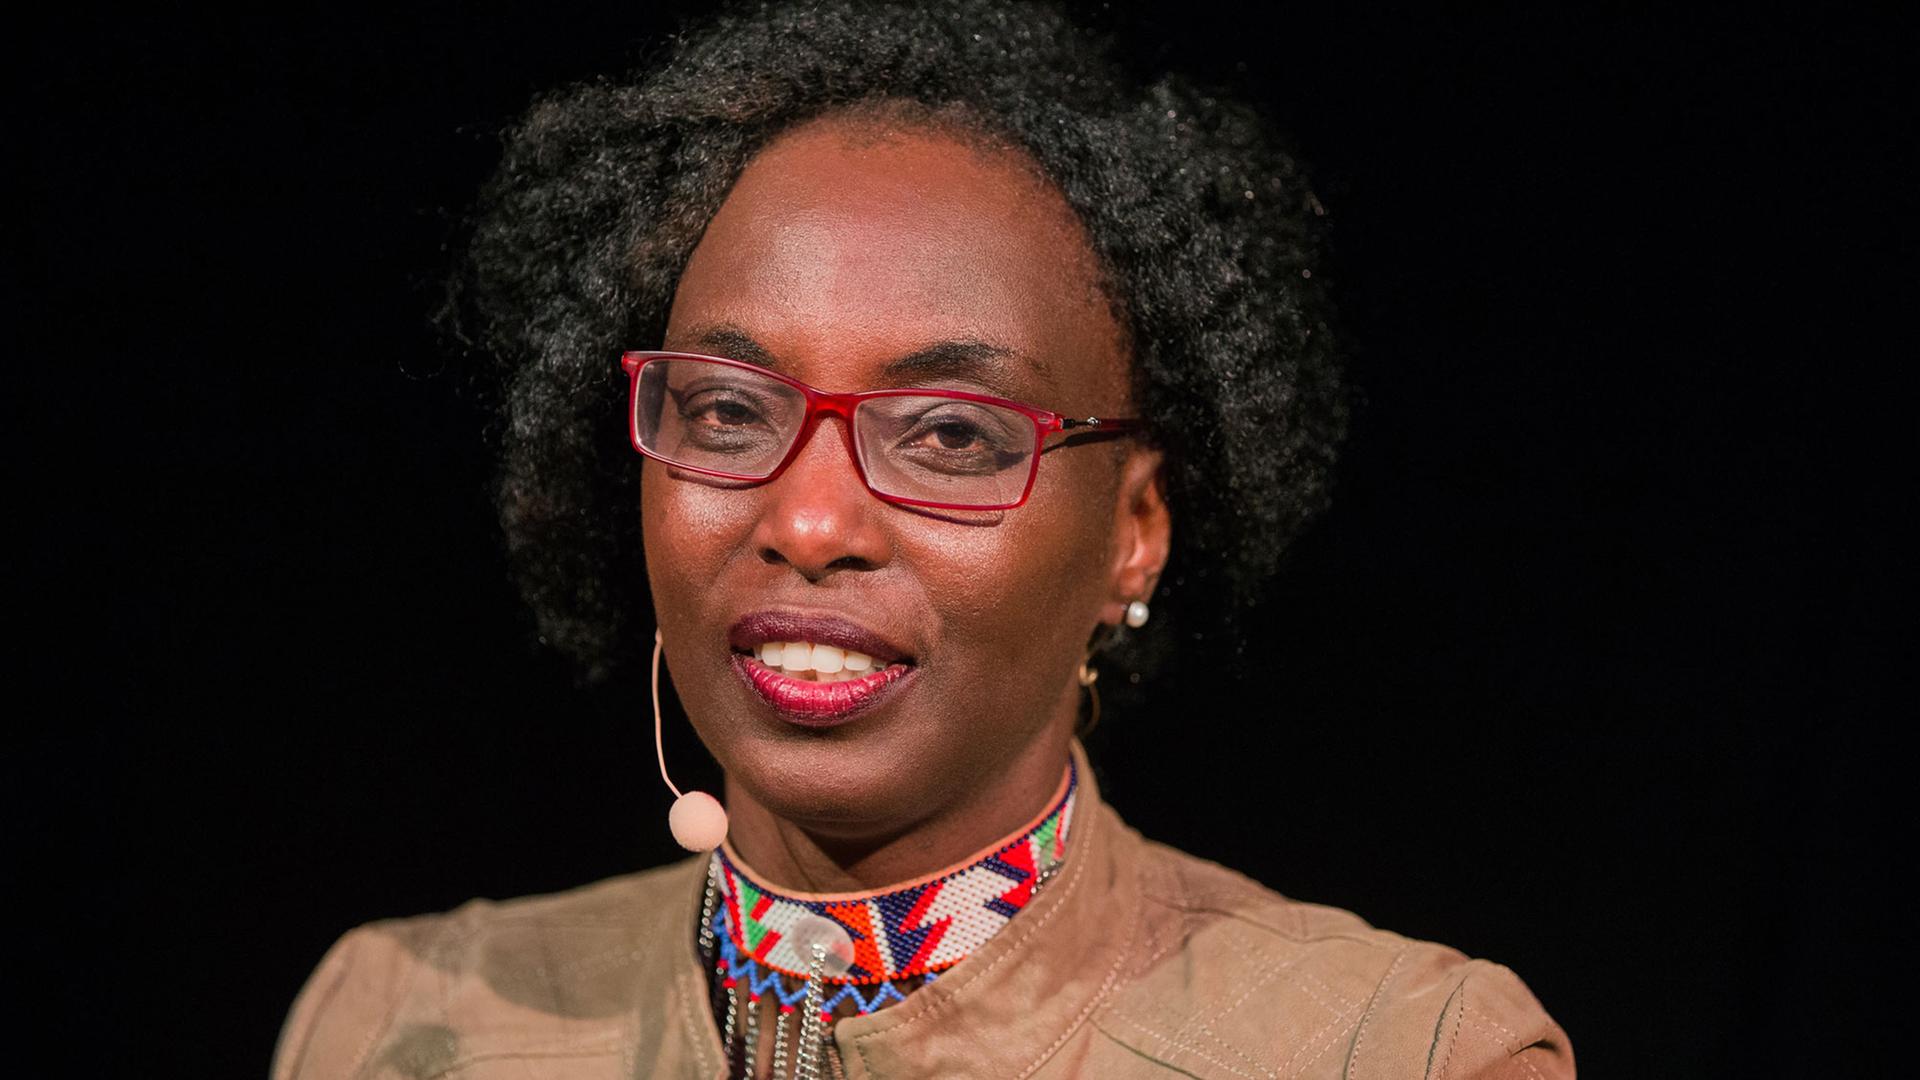 Die kenianische Schriftstellerin Yvonne Adhiambo Owuor sitzt am 14.03.2016 im Rahmen des Literaturfestivals Lit.Cologne in Köln auf einer Bühne.